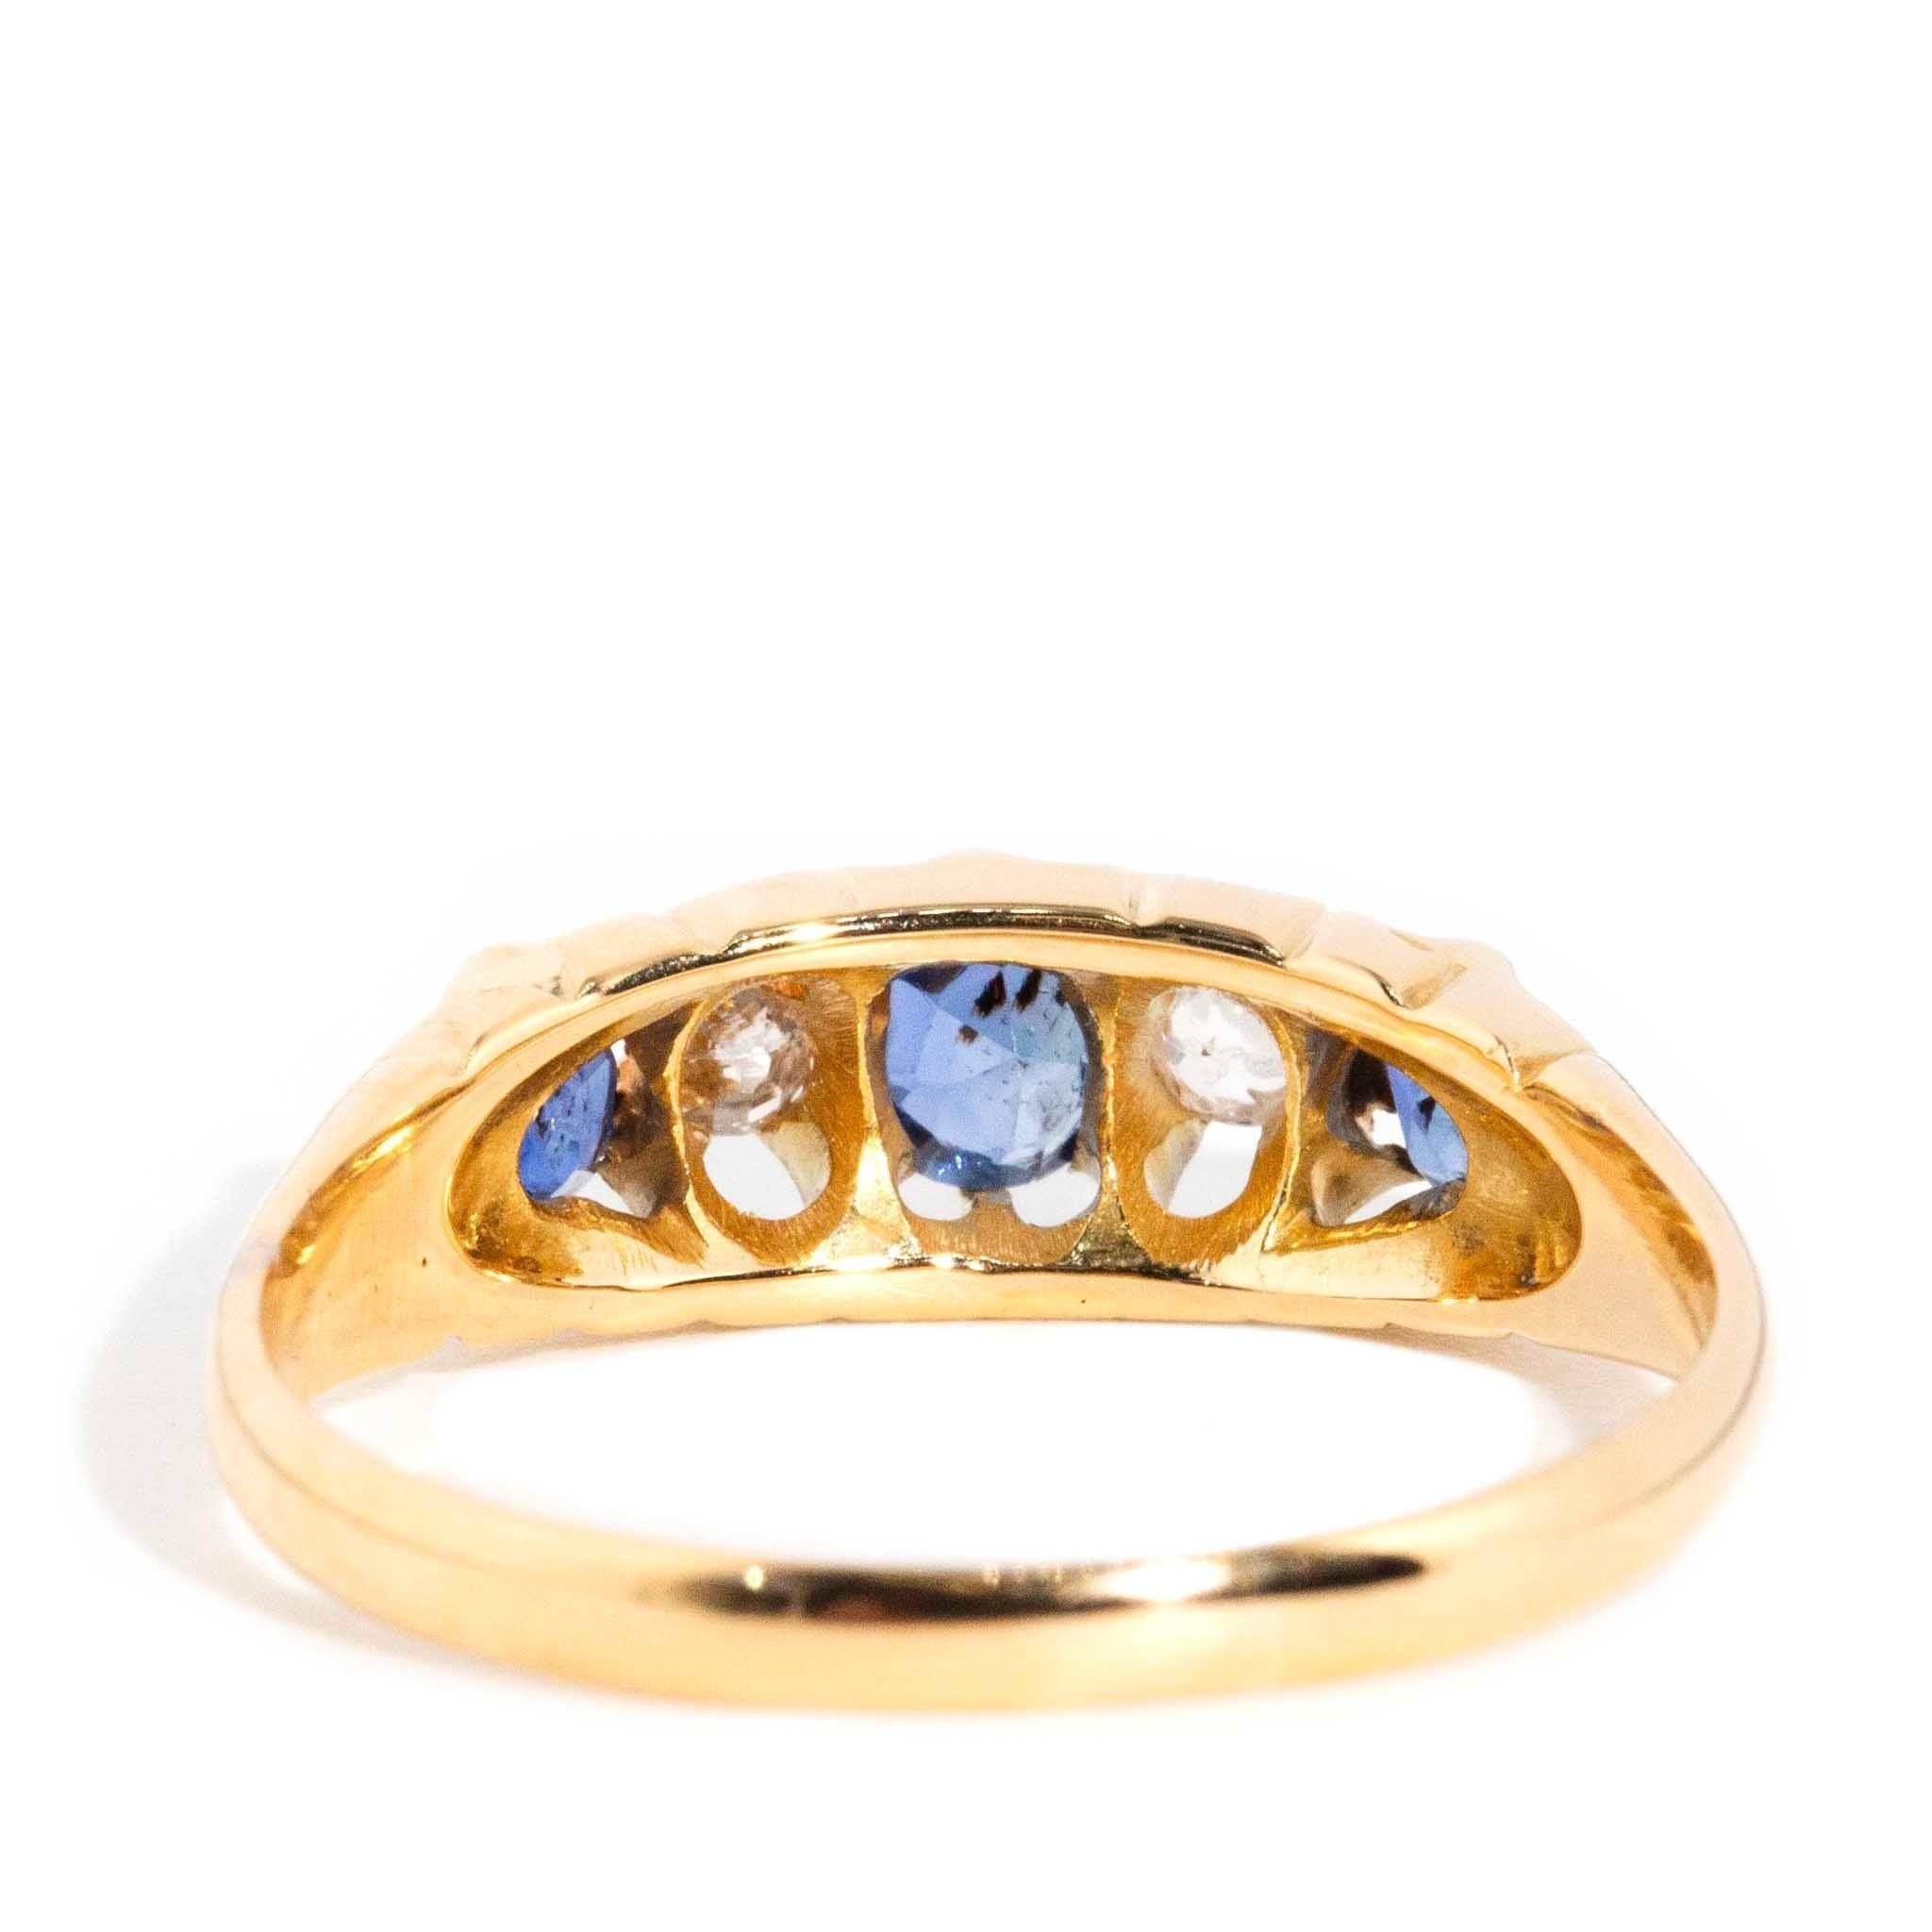 Vintage Antique 1897 Sapphire & Diamond London Bridge Ring 18 Carat Gold For Sale 2